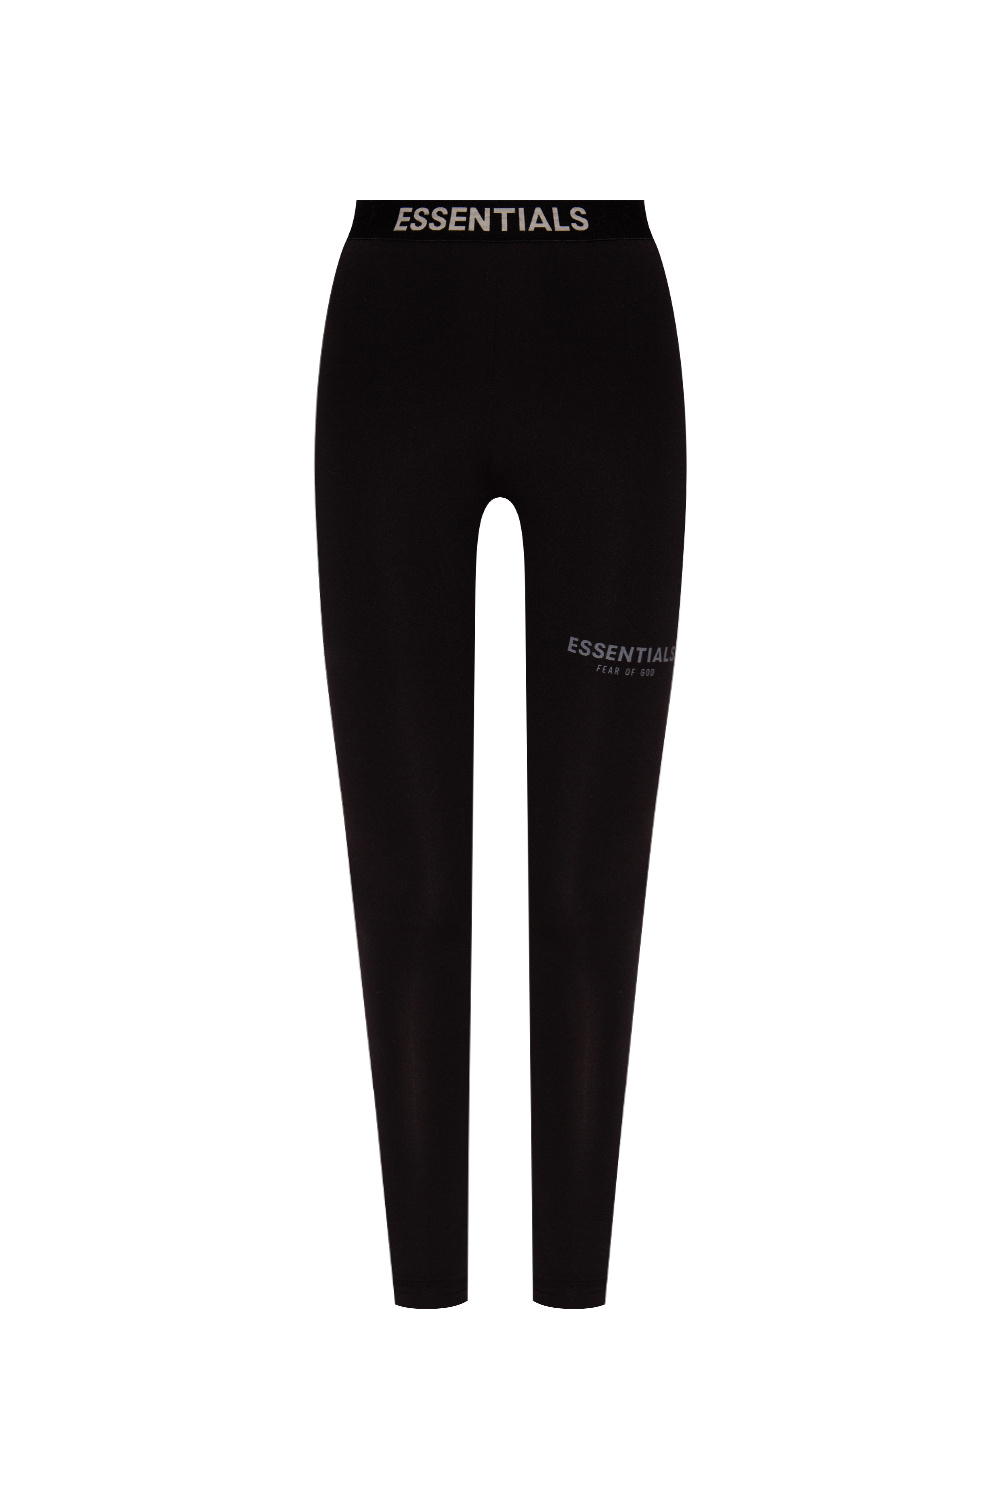 IetpShops GB - Leggings with logo Fear Of God Essentials - Dri-fit Strike  21 Shorts Women